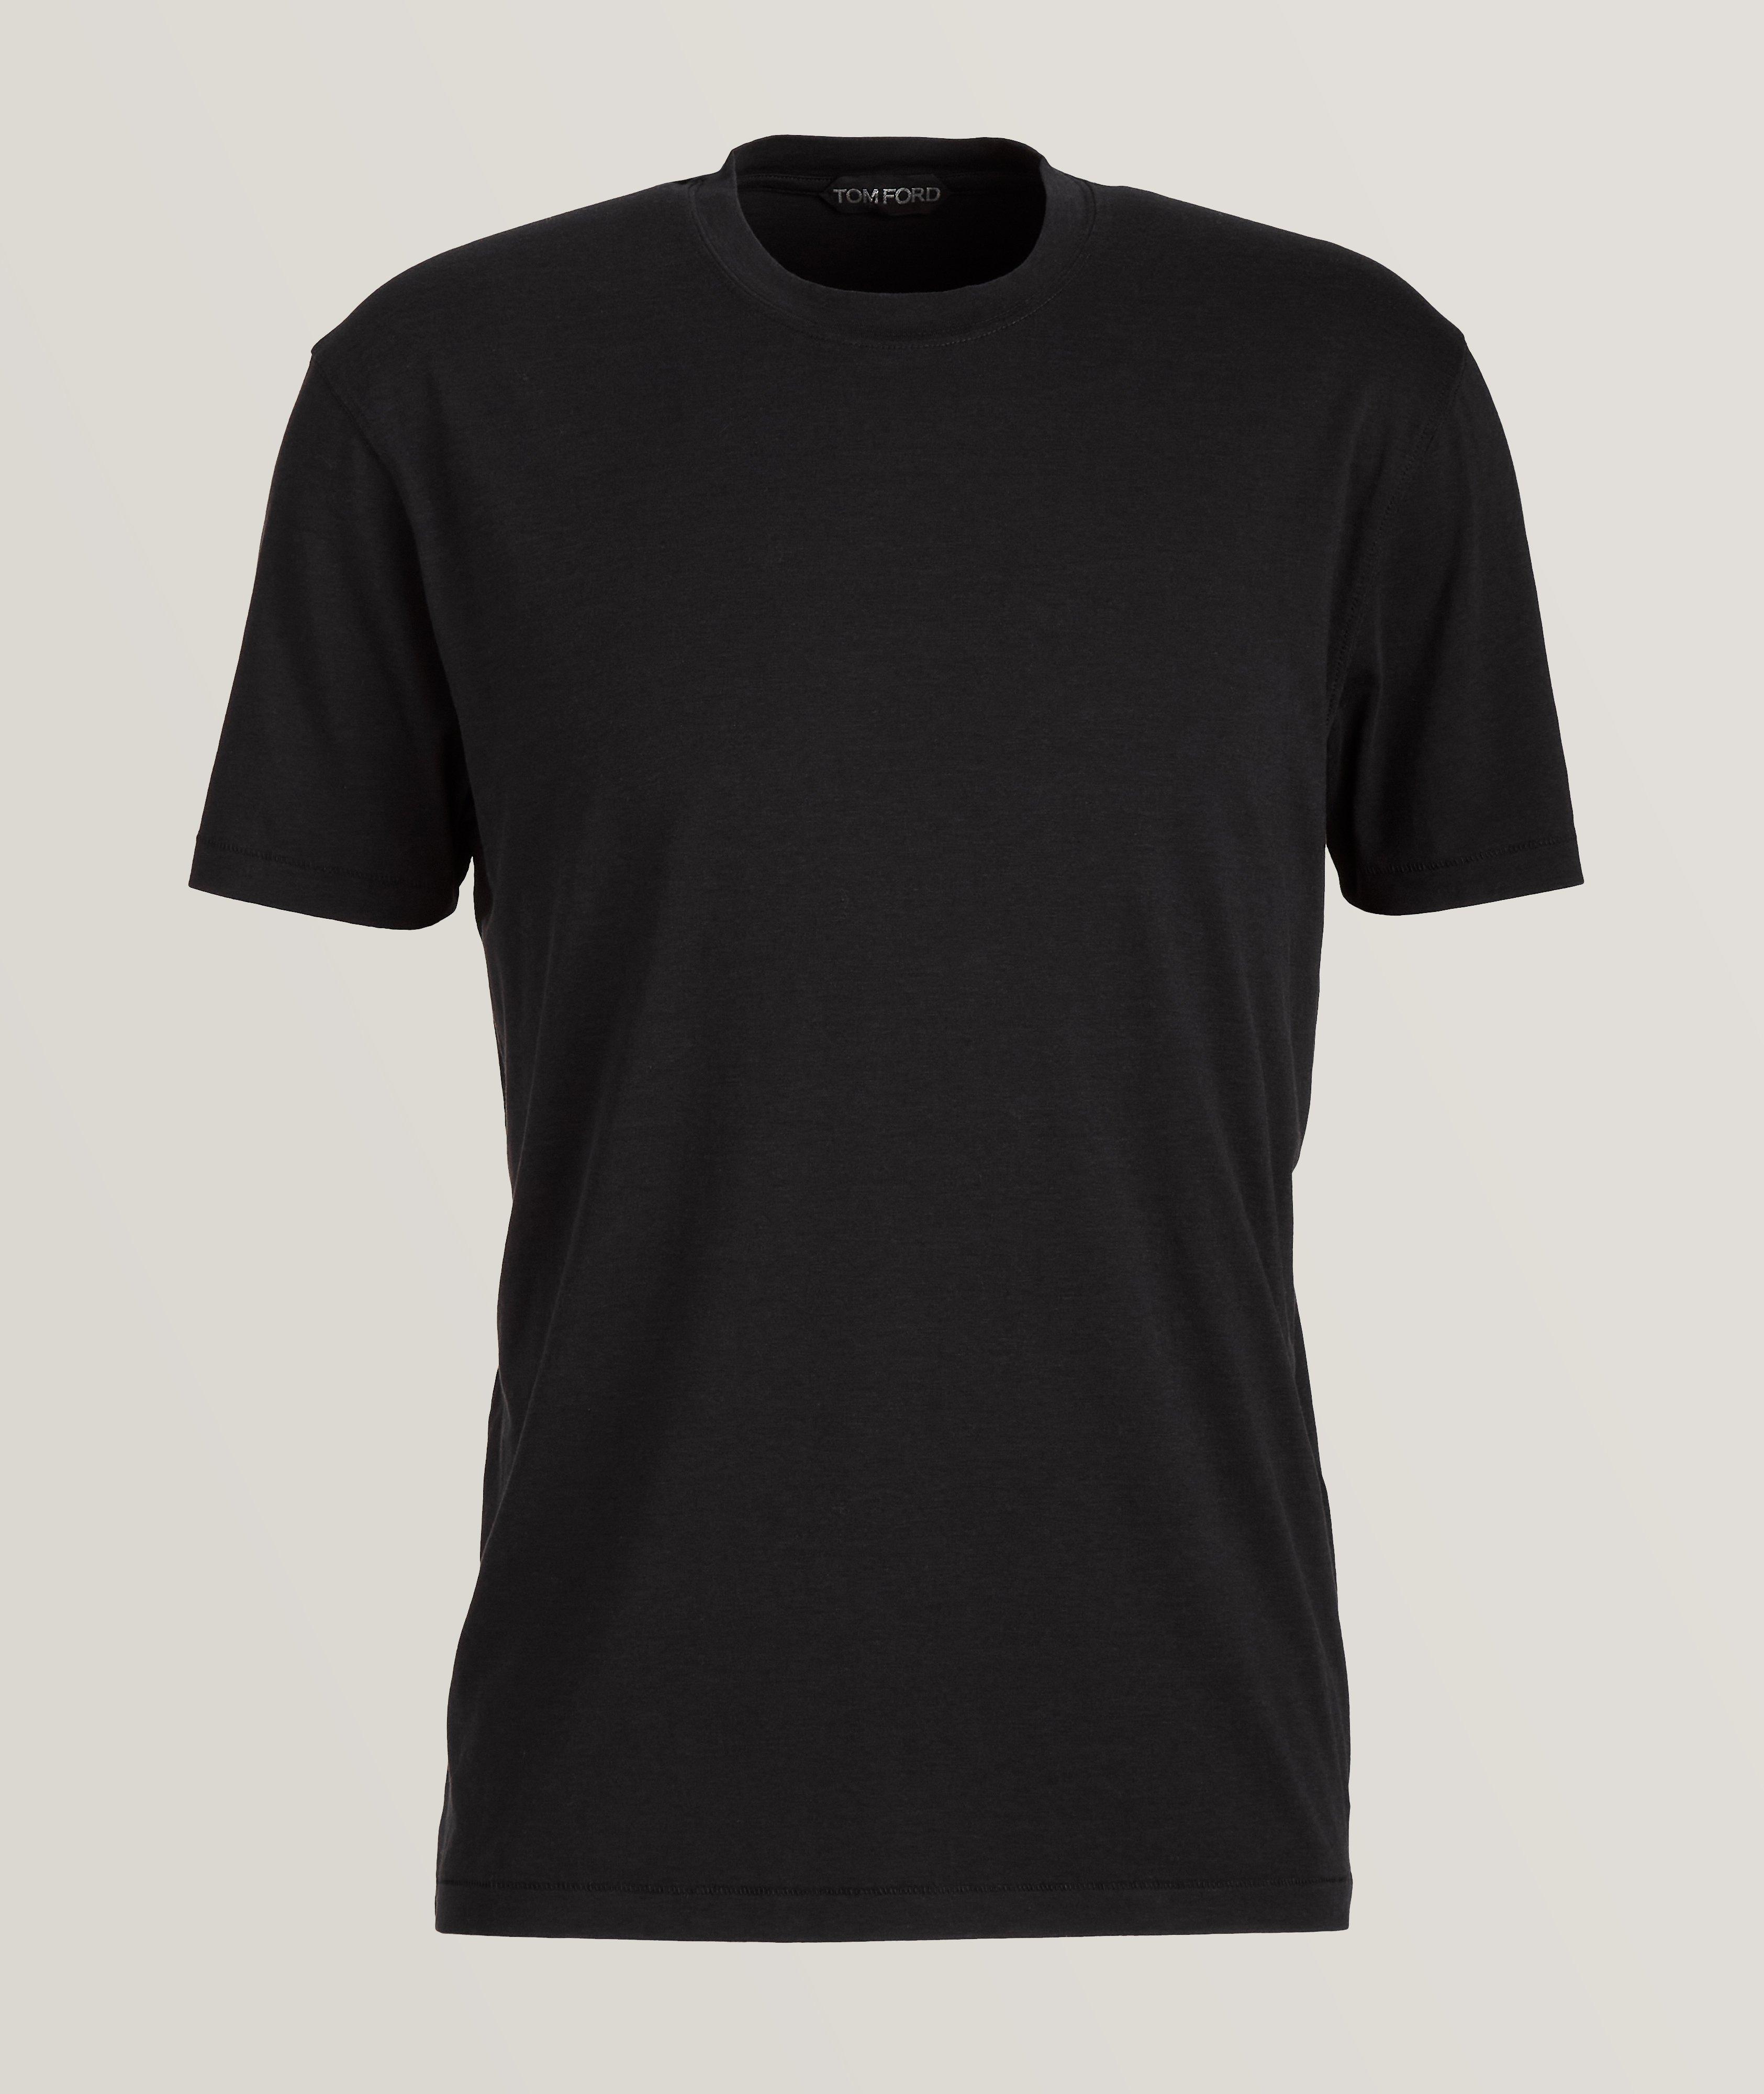 Mélange Cotton-Blend Crewneck T-Shirt image 0